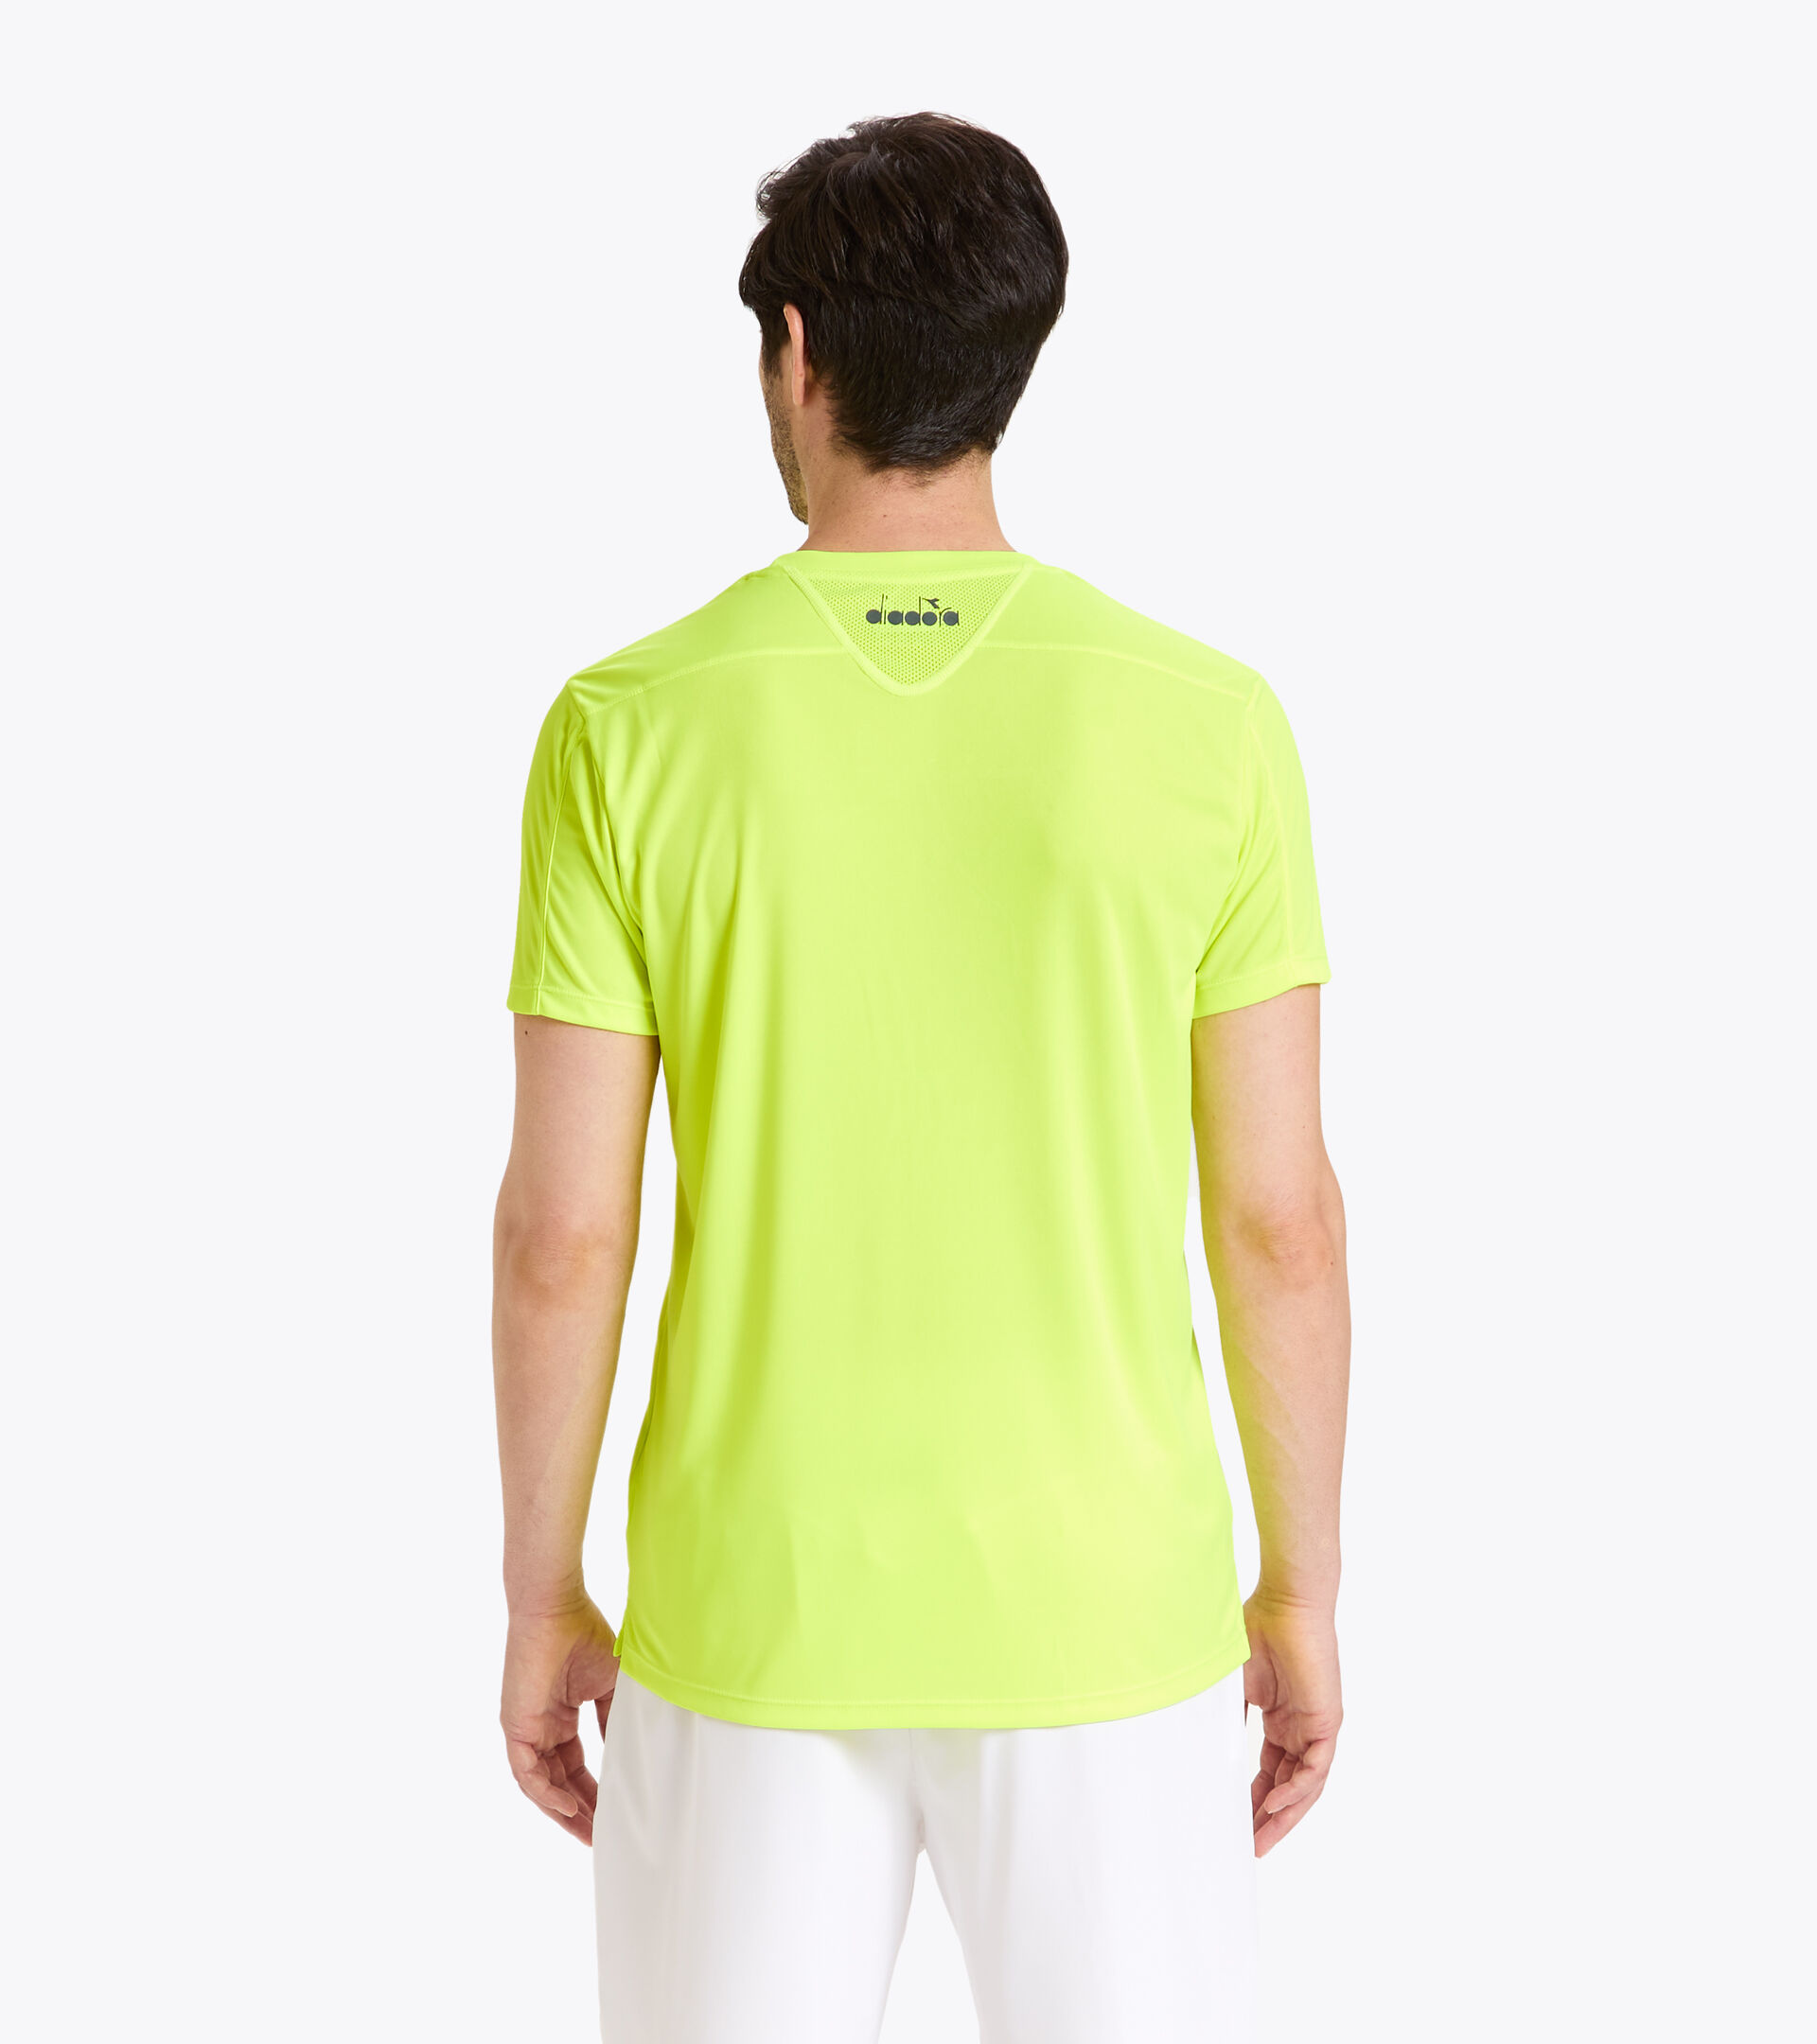 Tennis T-shirt - Men T-SHIRT TEAM FLUO YELLOW DD - Diadora